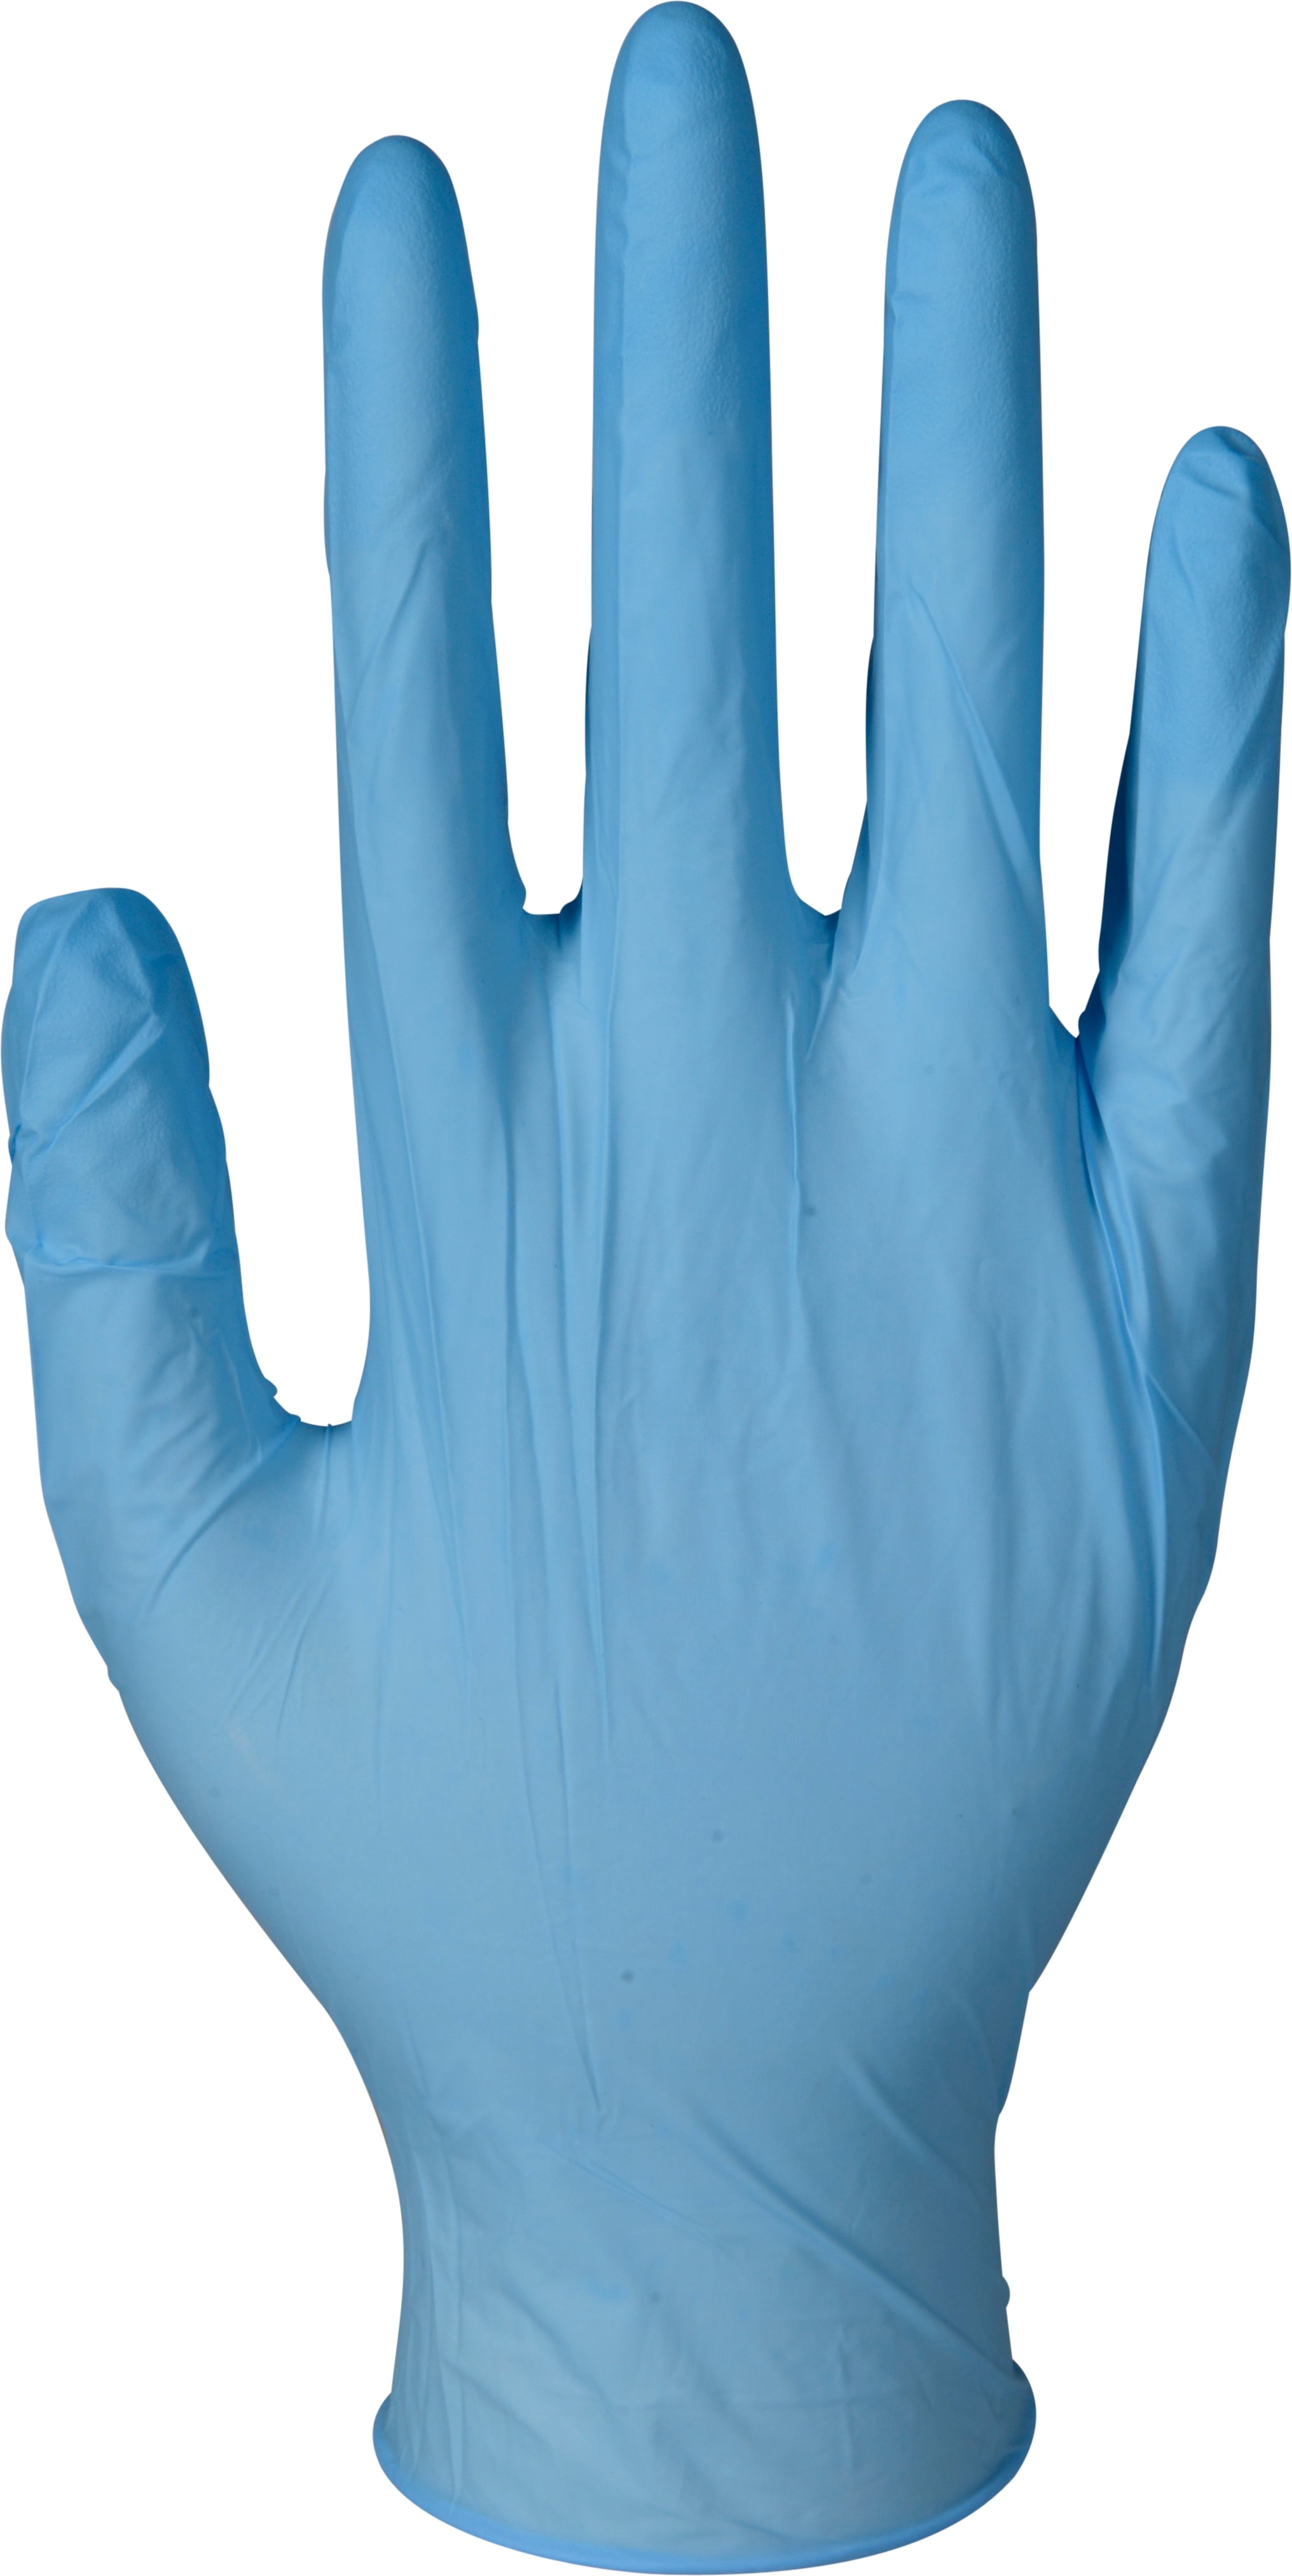 Handschoen blauw nitril maat S